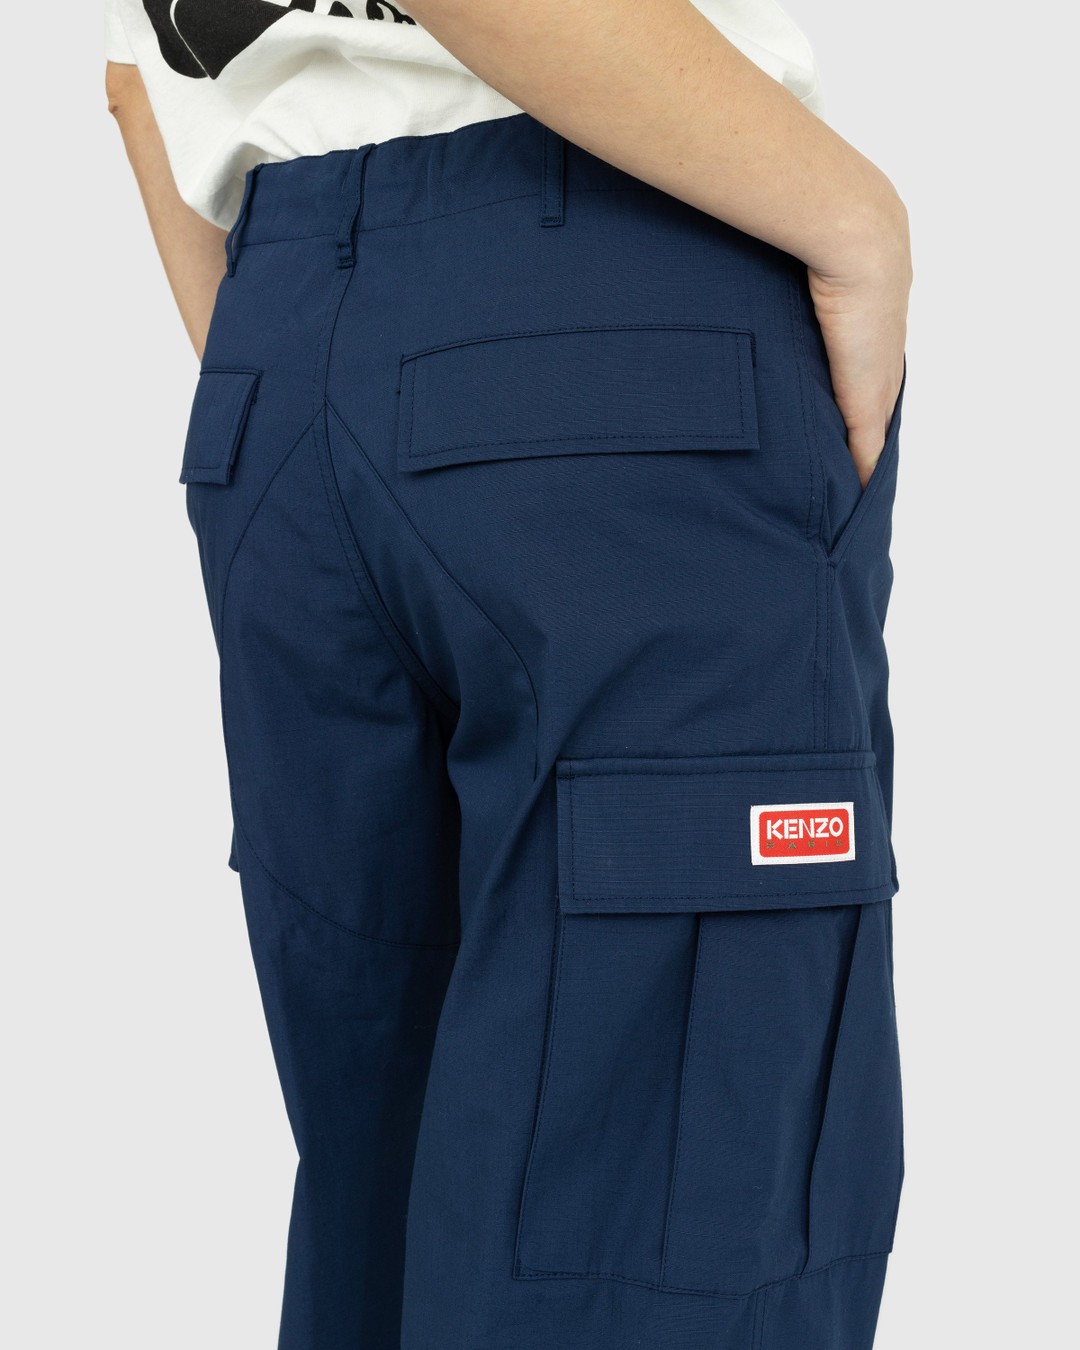 Kenzo – Cargo Jogpants - Pants - Blue - Image 6